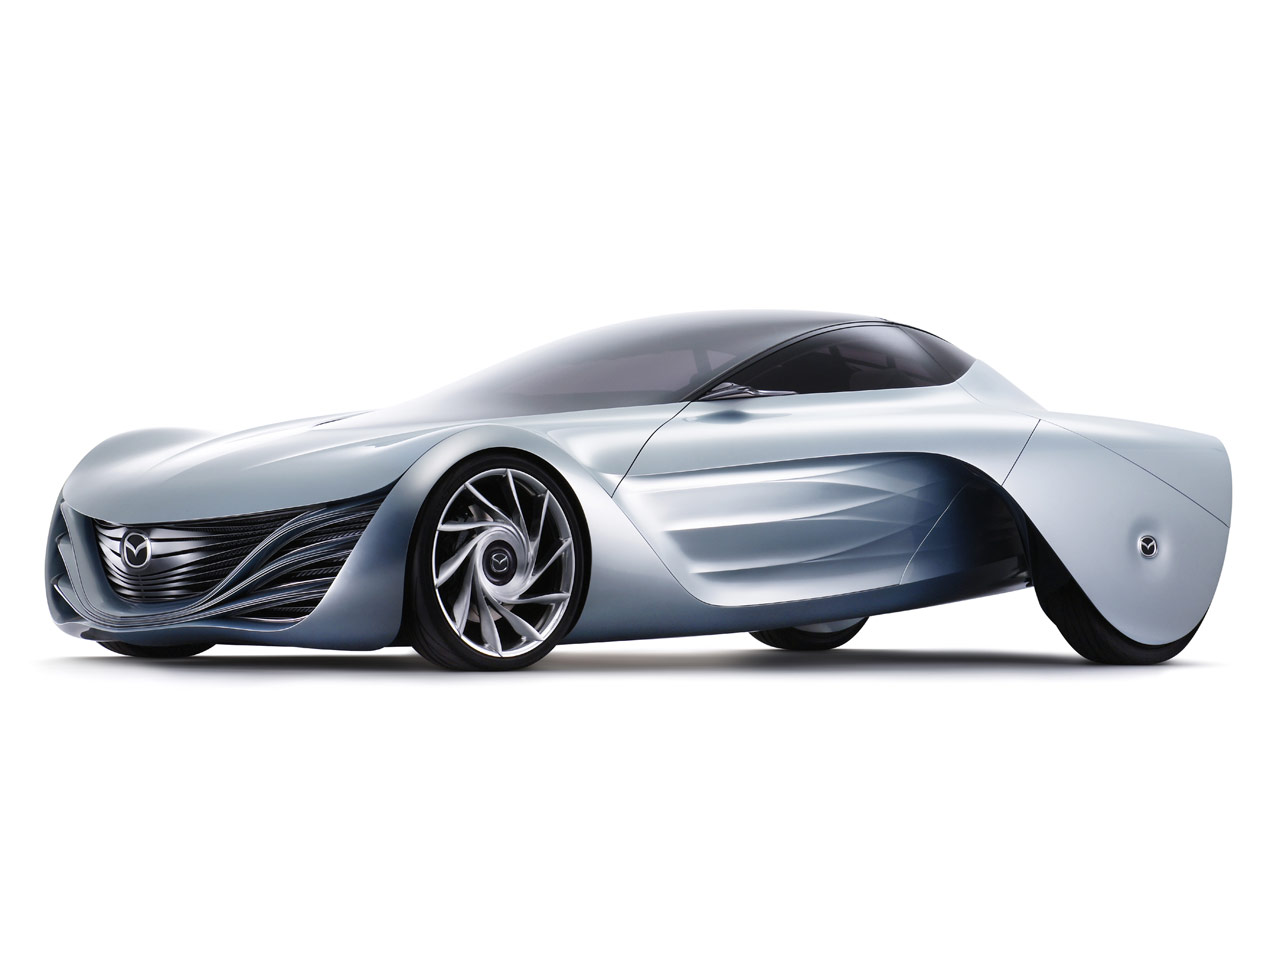 Mazda Taiki Concept